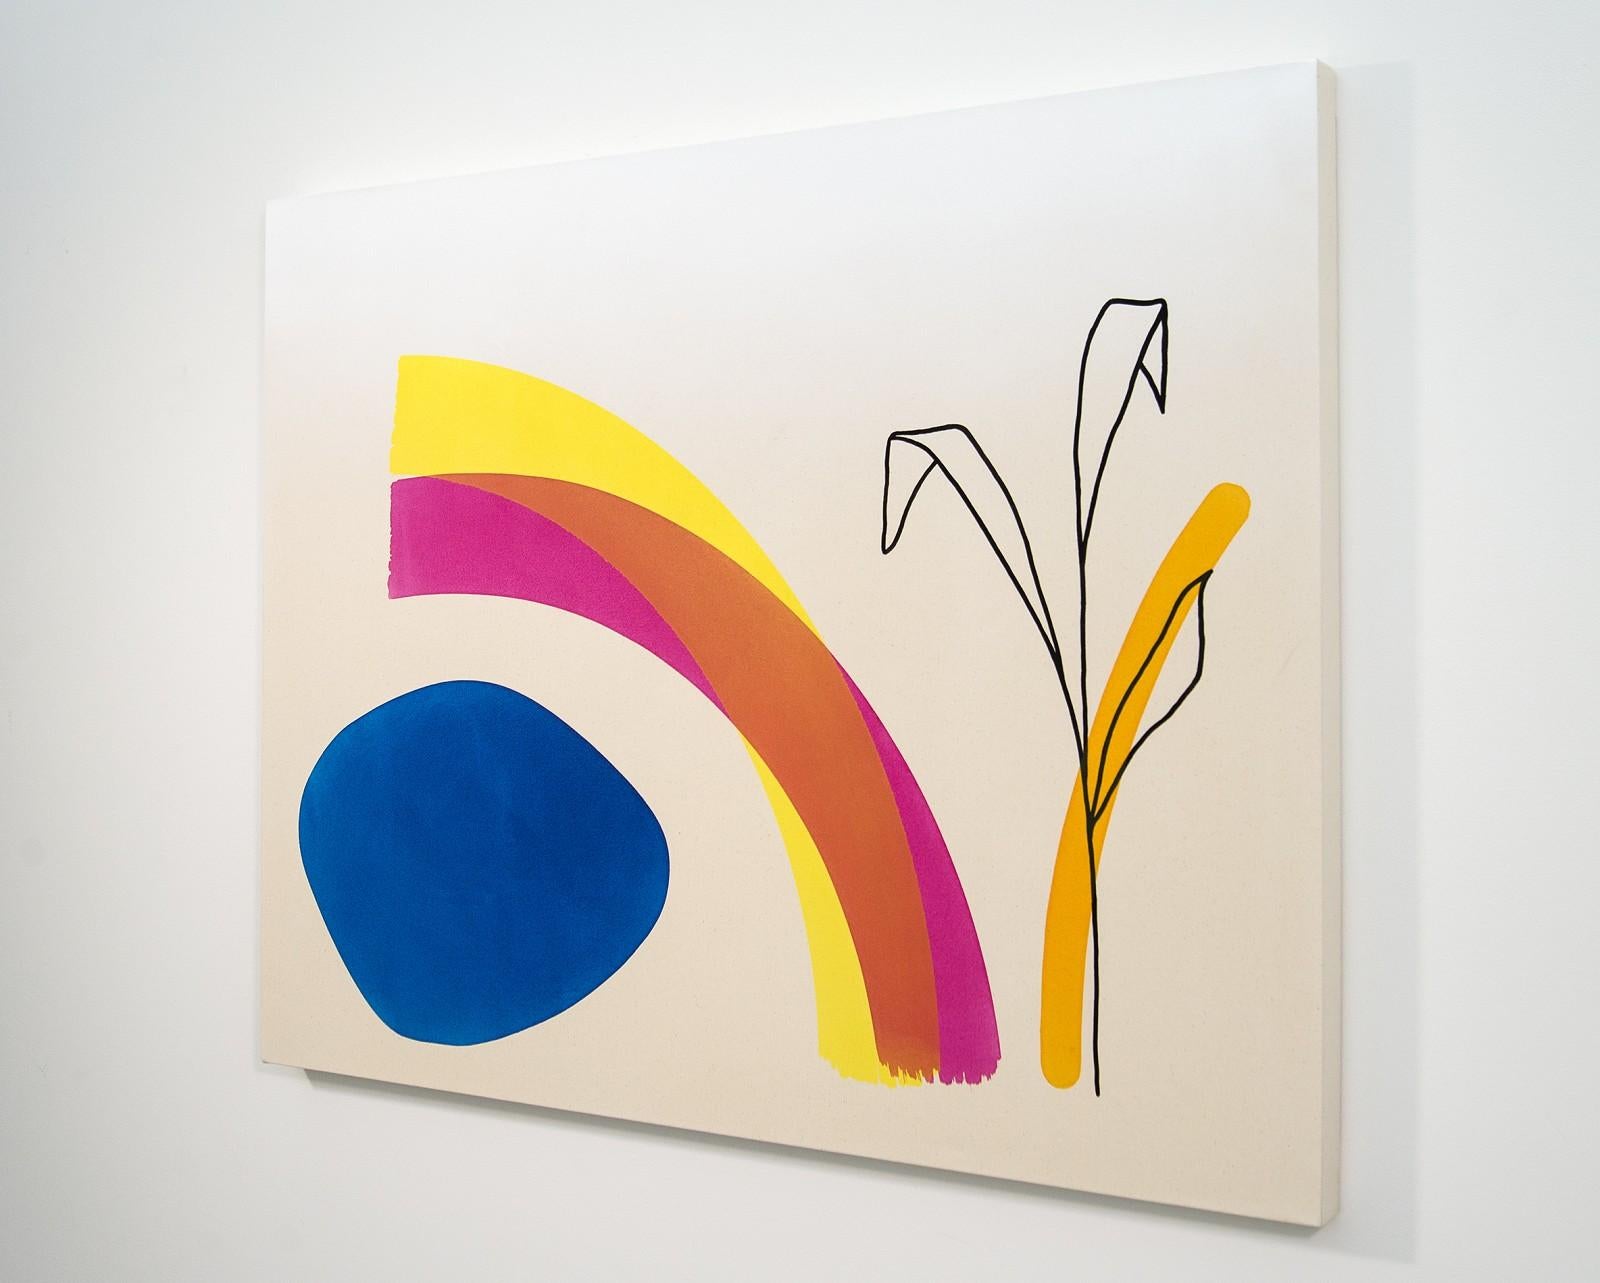 Outline einer Pflanze - helle, farbenfrohe, abstrakte Formen, Acryl auf Leinwand – Painting von Aron Hill